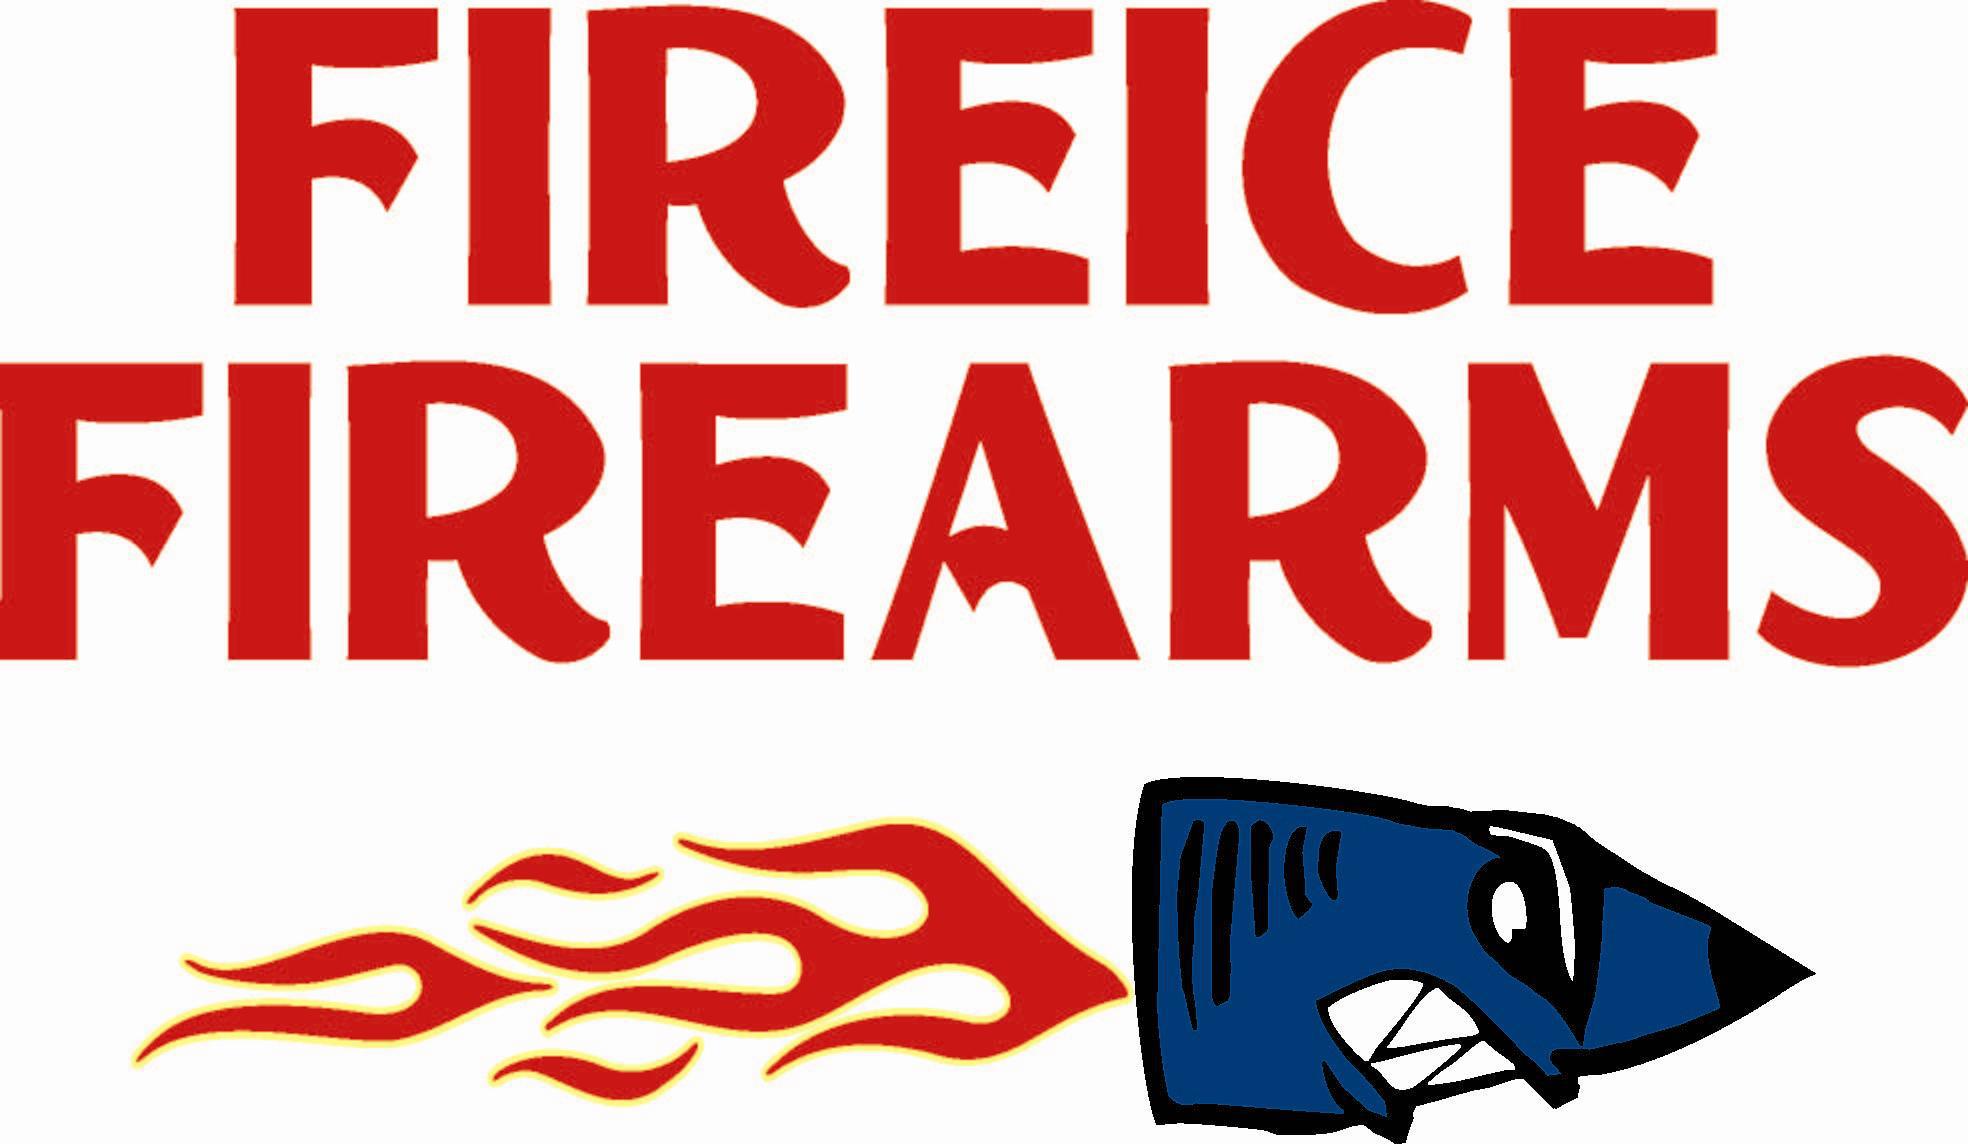 Fireice Firearms